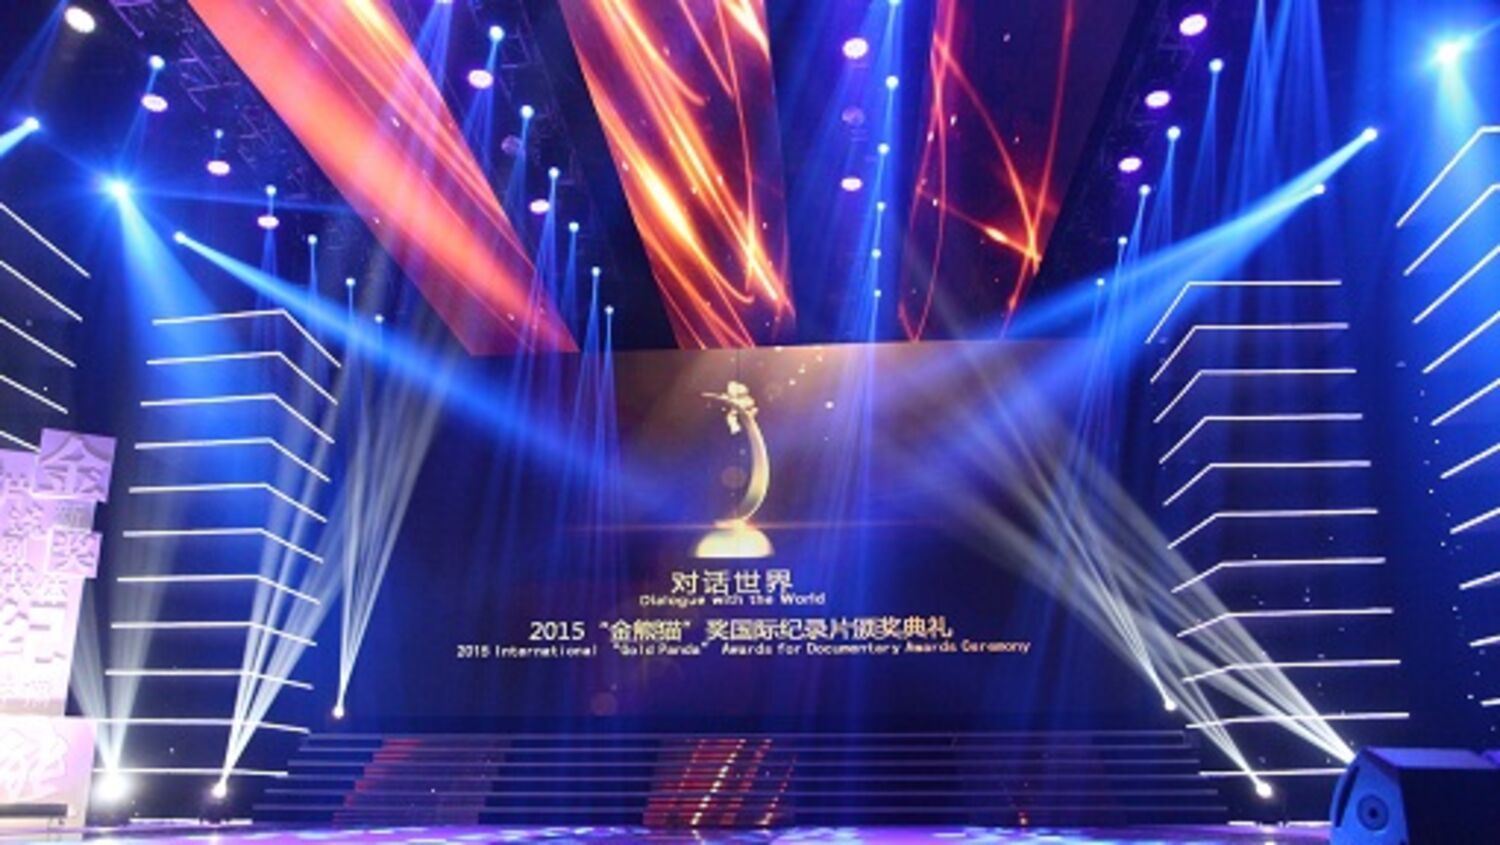 Concrete Love wins at Sichuan TV Festival